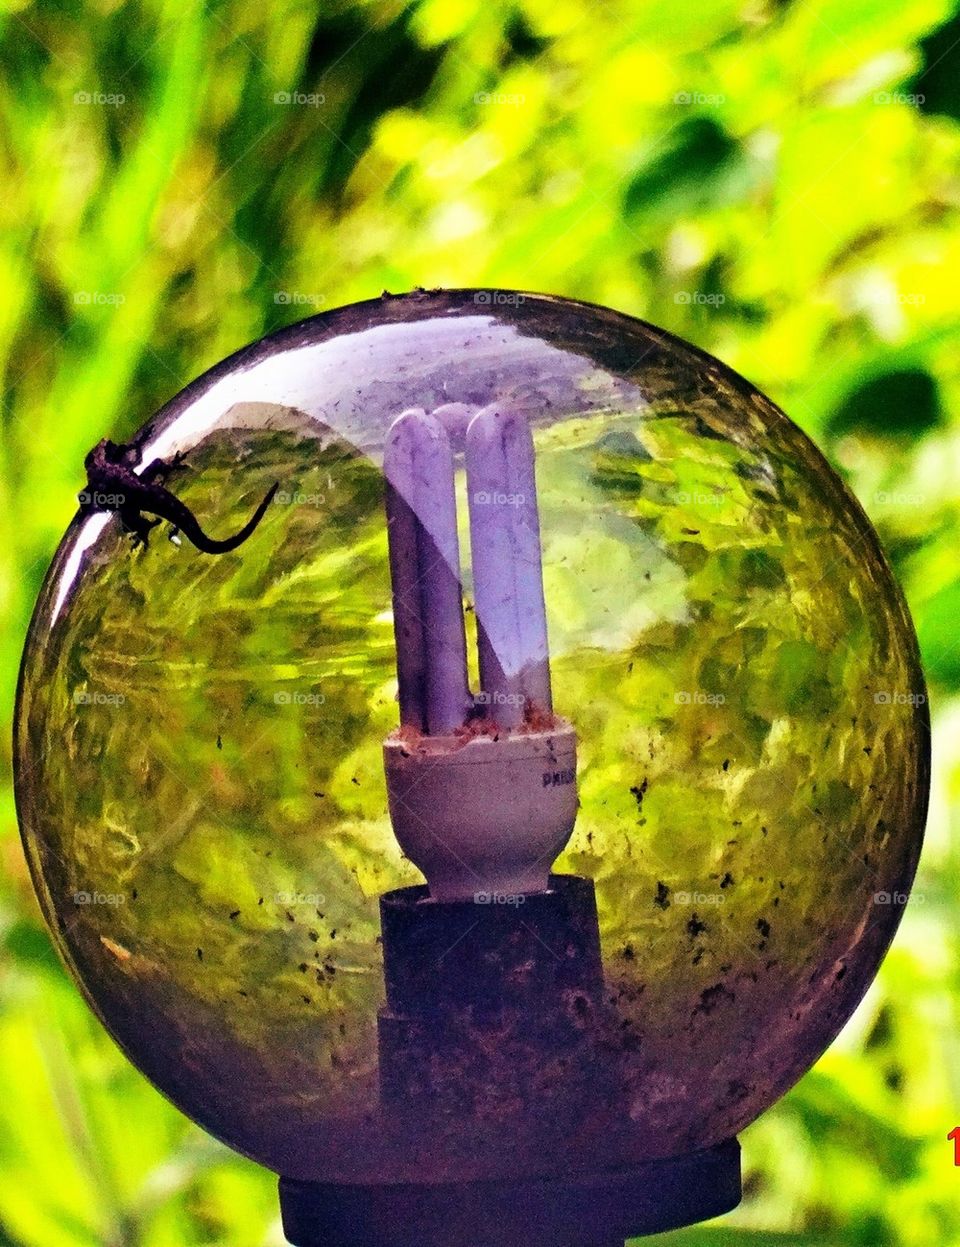 Lizard on a crystal ball